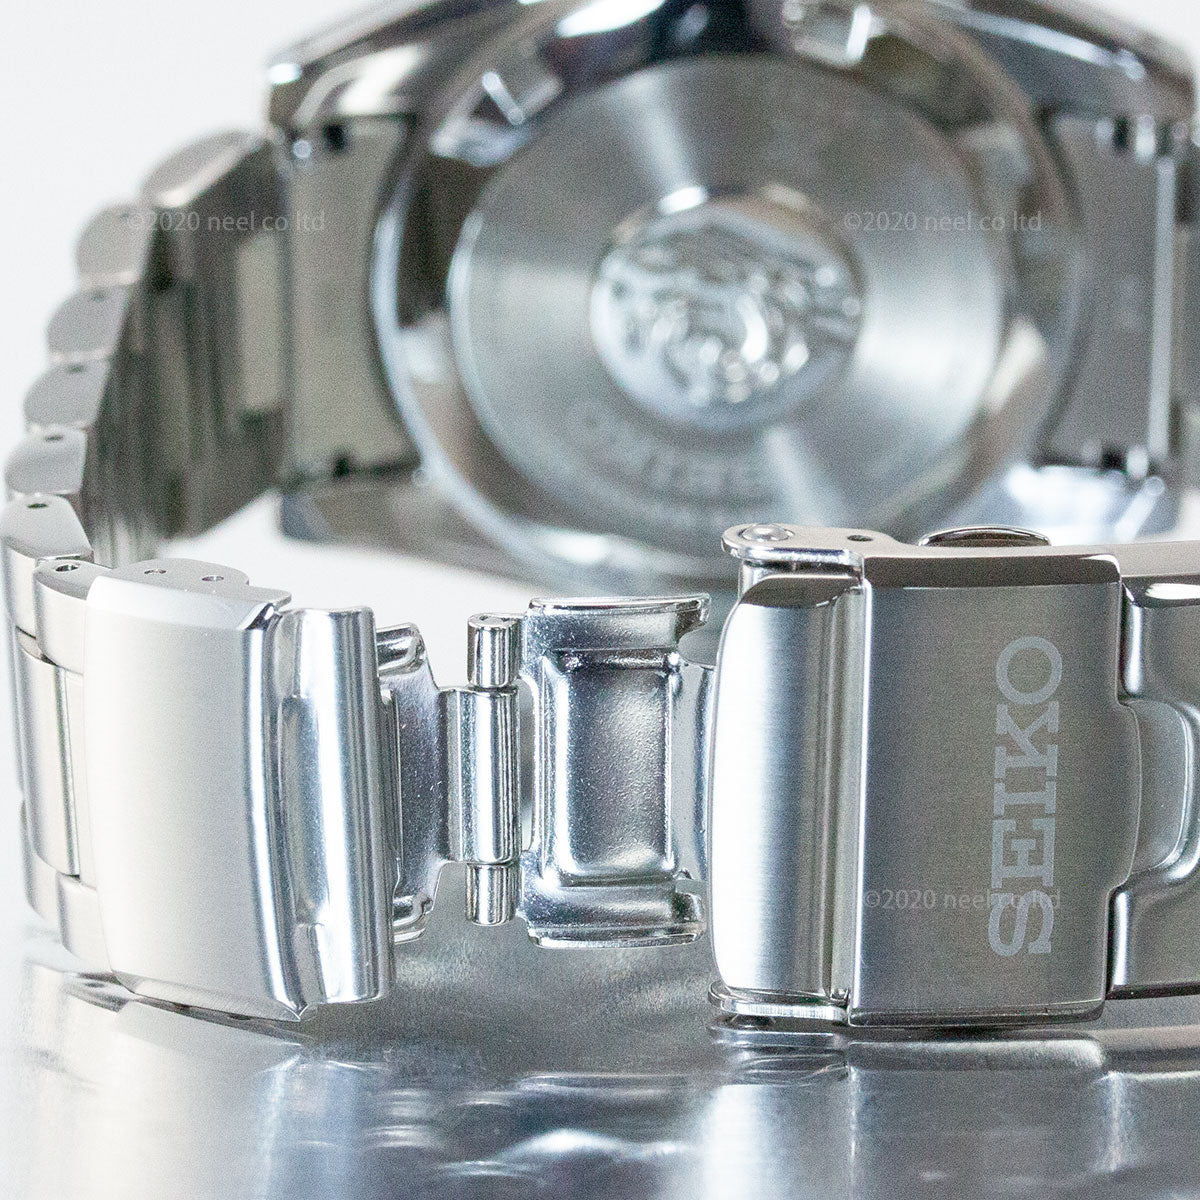 セイコー 腕時計 メンズ SBDC101 プロスペックス ダイバースキューバ ヒストリカルコレクション 国産ファーストダイバーズウォッチ 現代デザイン DIVER SCUBA 自動巻き（6R35/手巻き付） チャコールグレーxシルバー アナログ表示